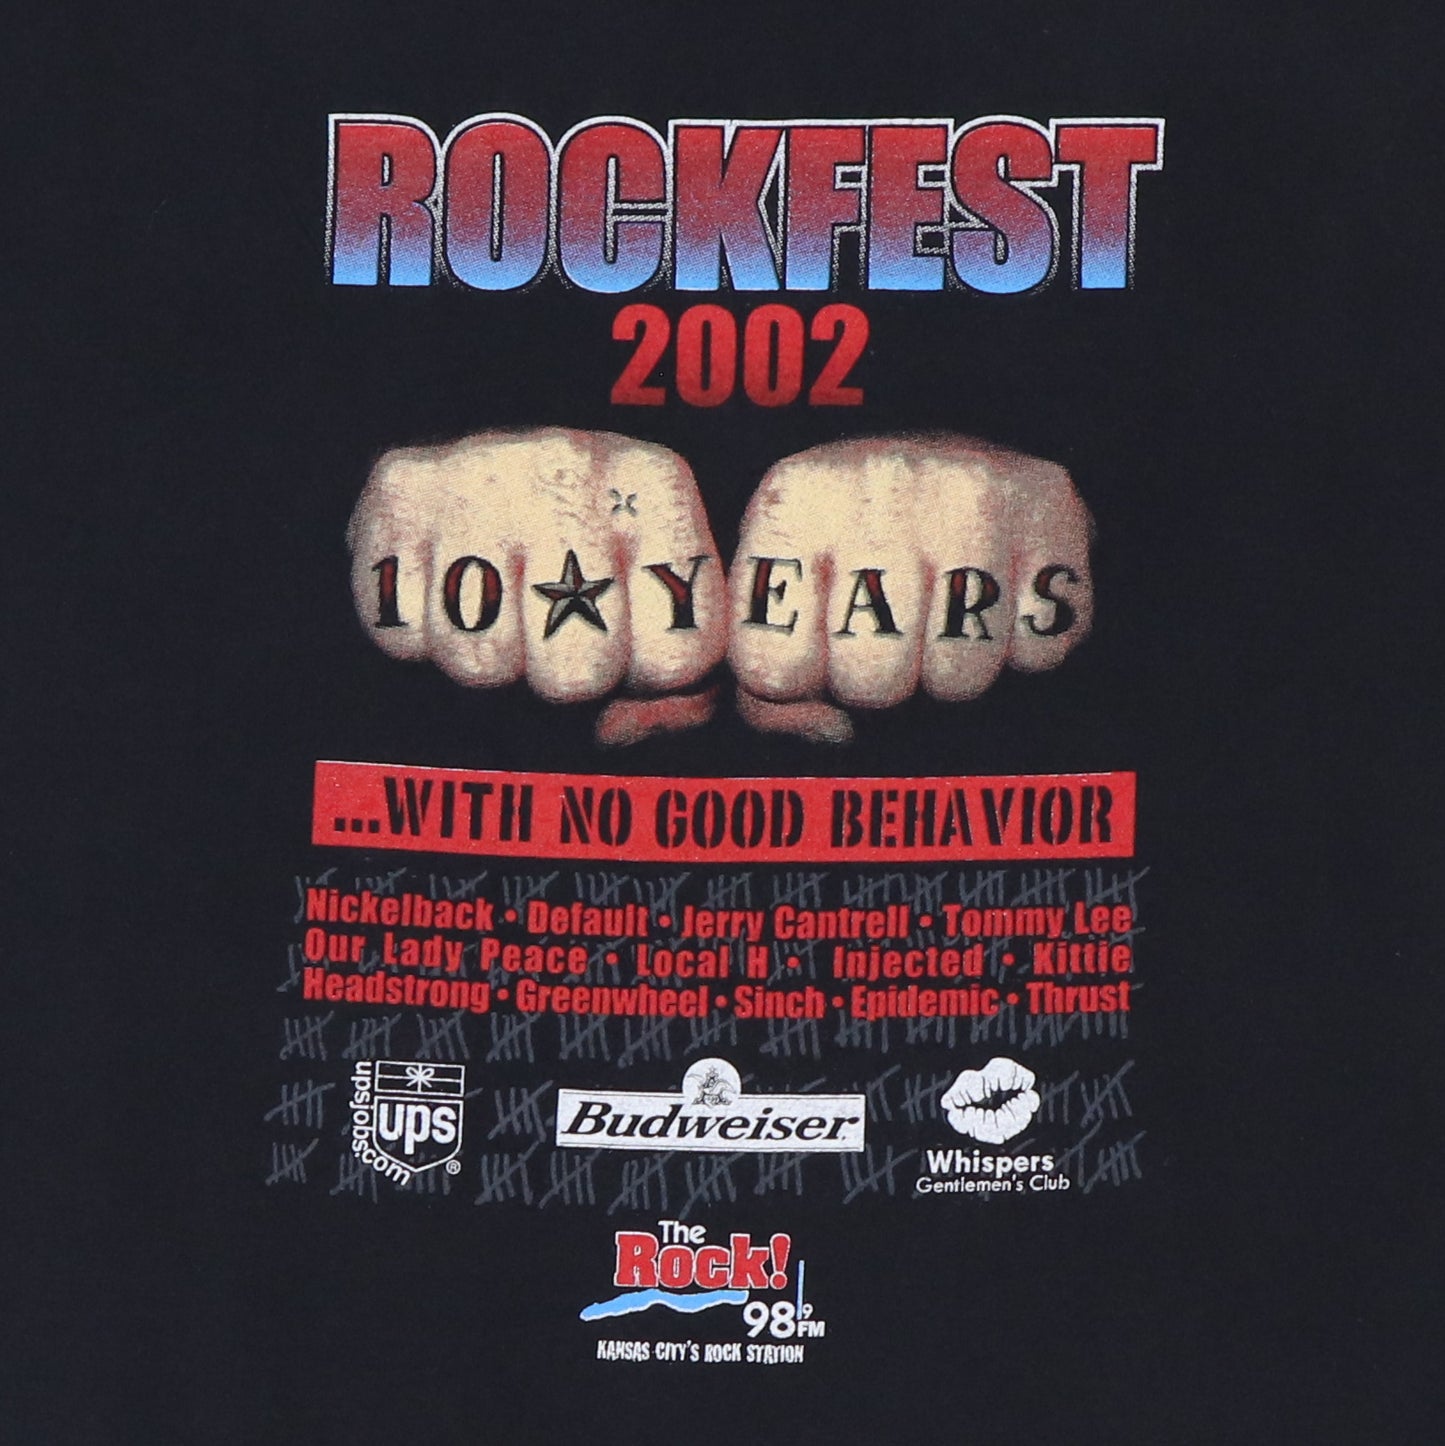 2002 Rockfest The Rock 989 Shirt